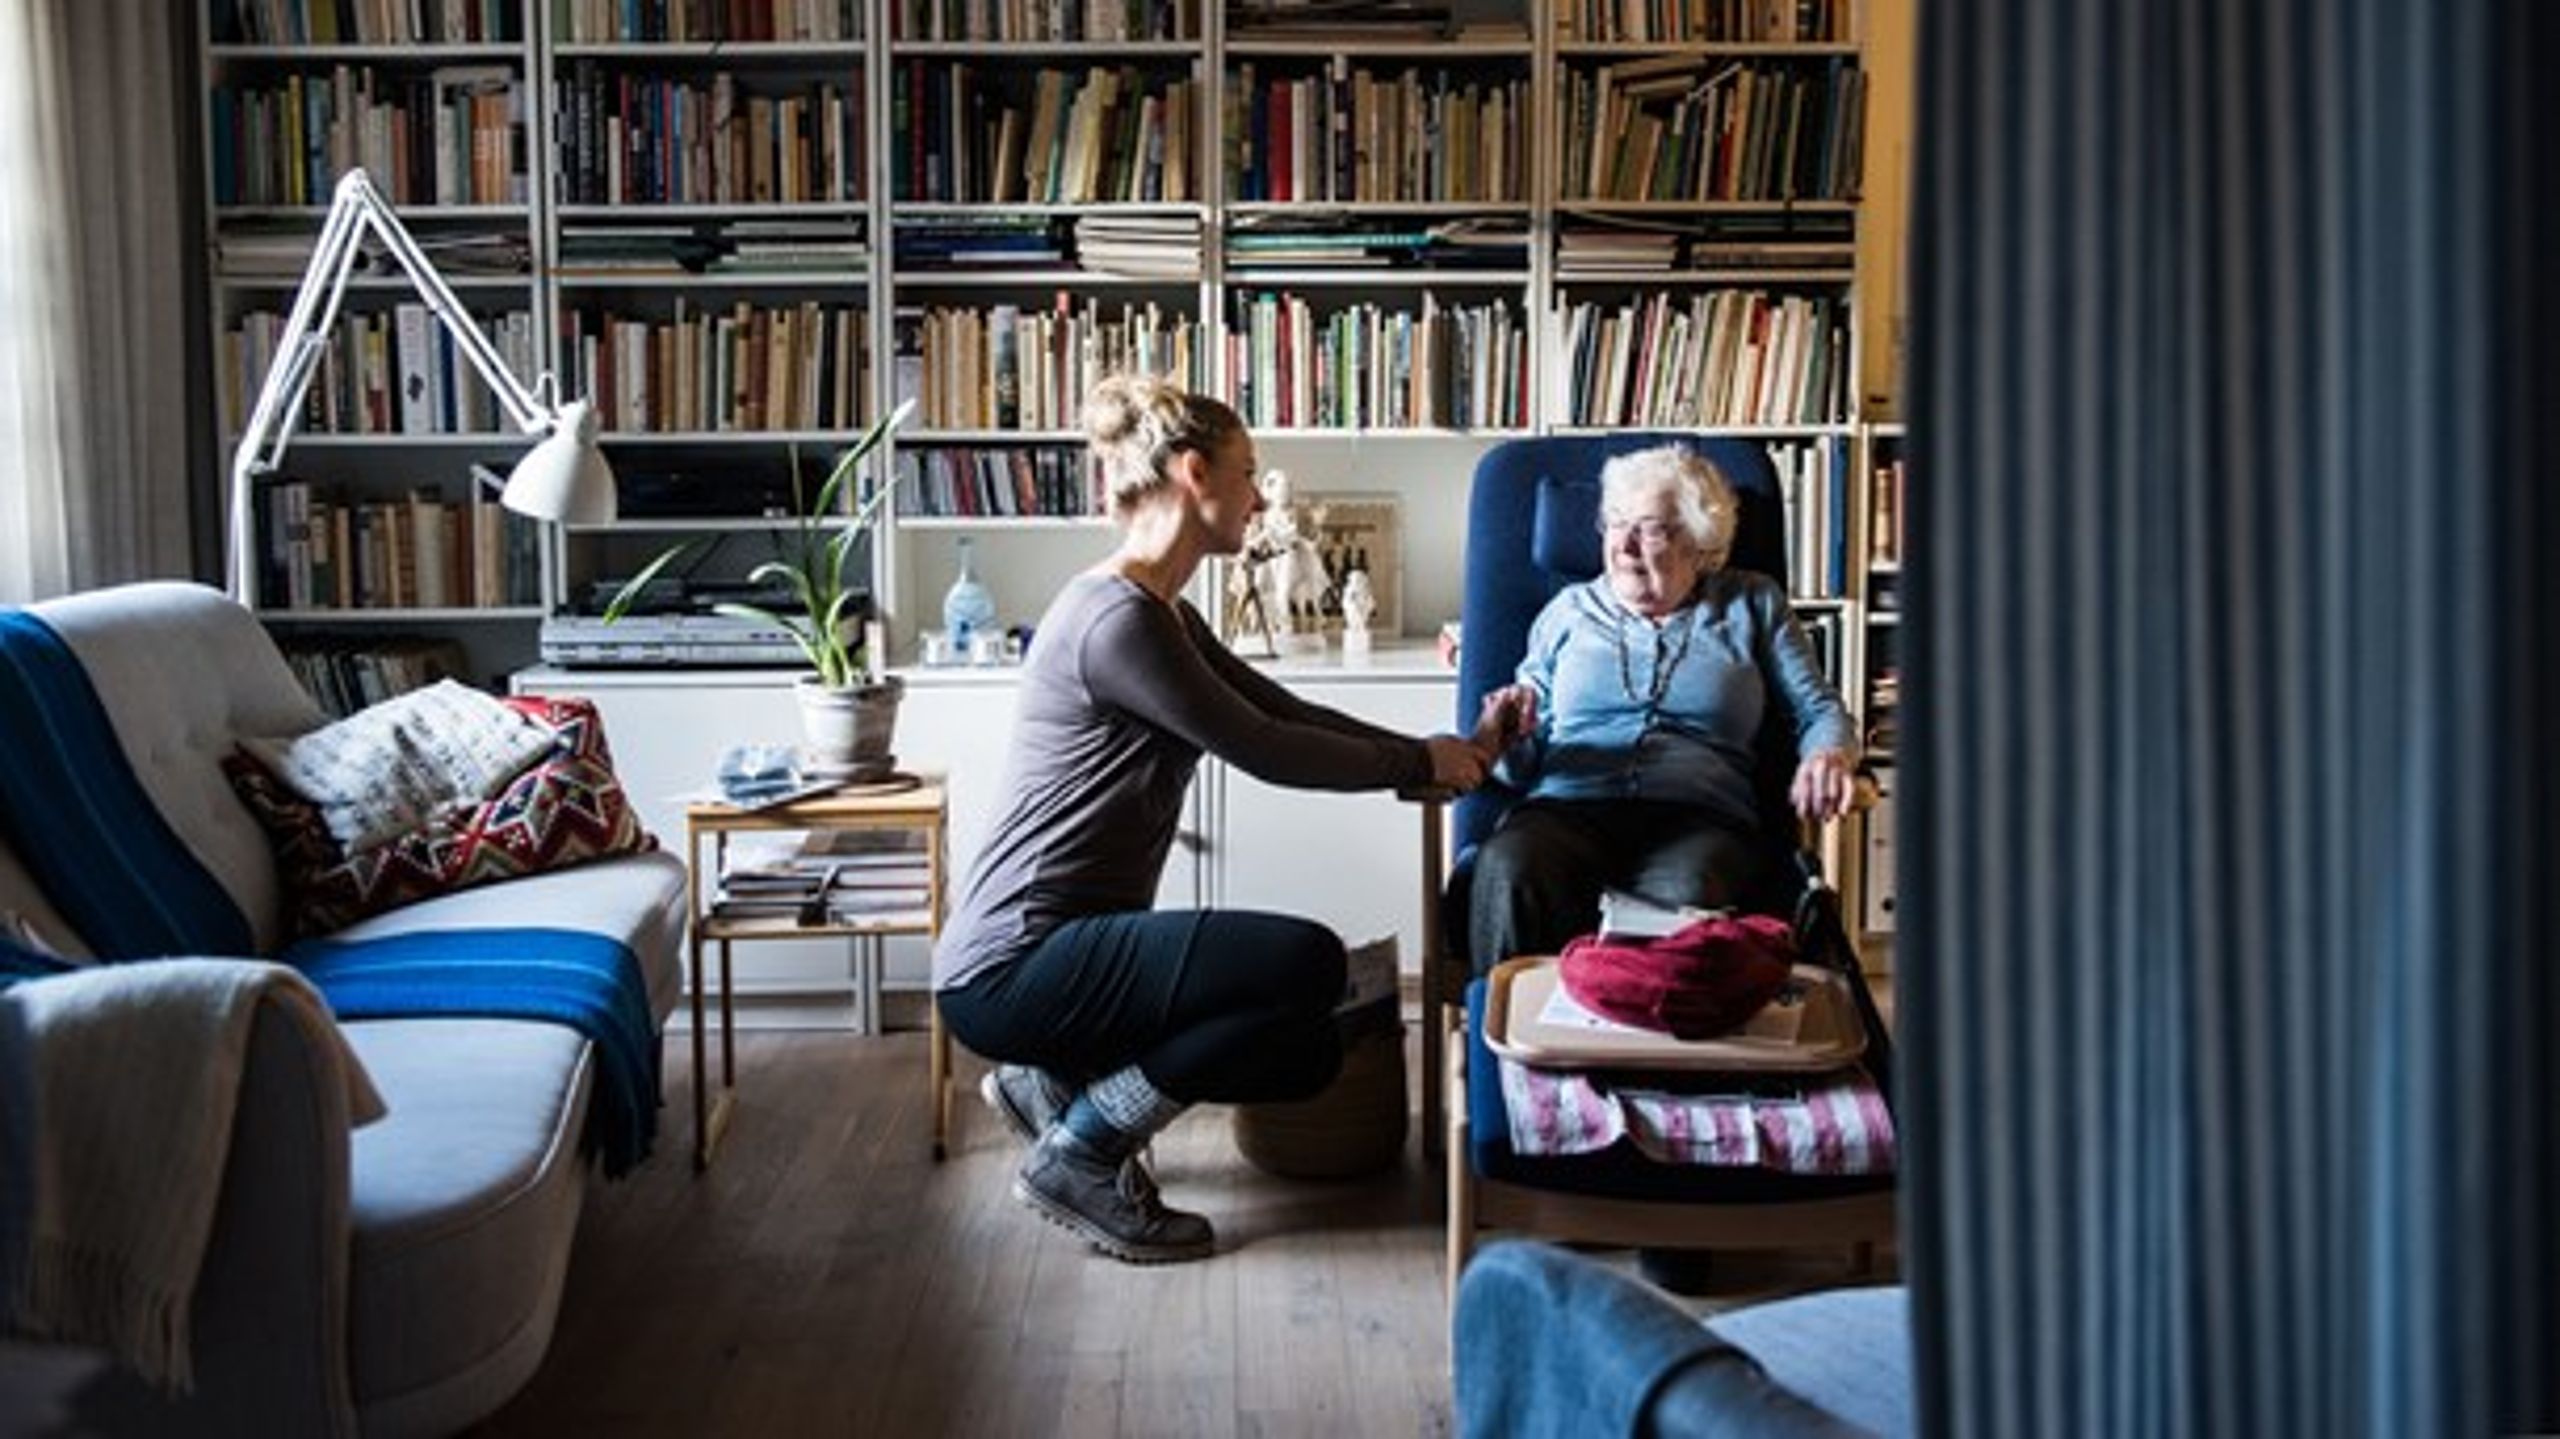 Den hollandske Buurtzorg-model vil gavne de ældre og plejepersonalet i Danmark, skriver sygeplejerske, som har arbejdet for Buurtzorg.